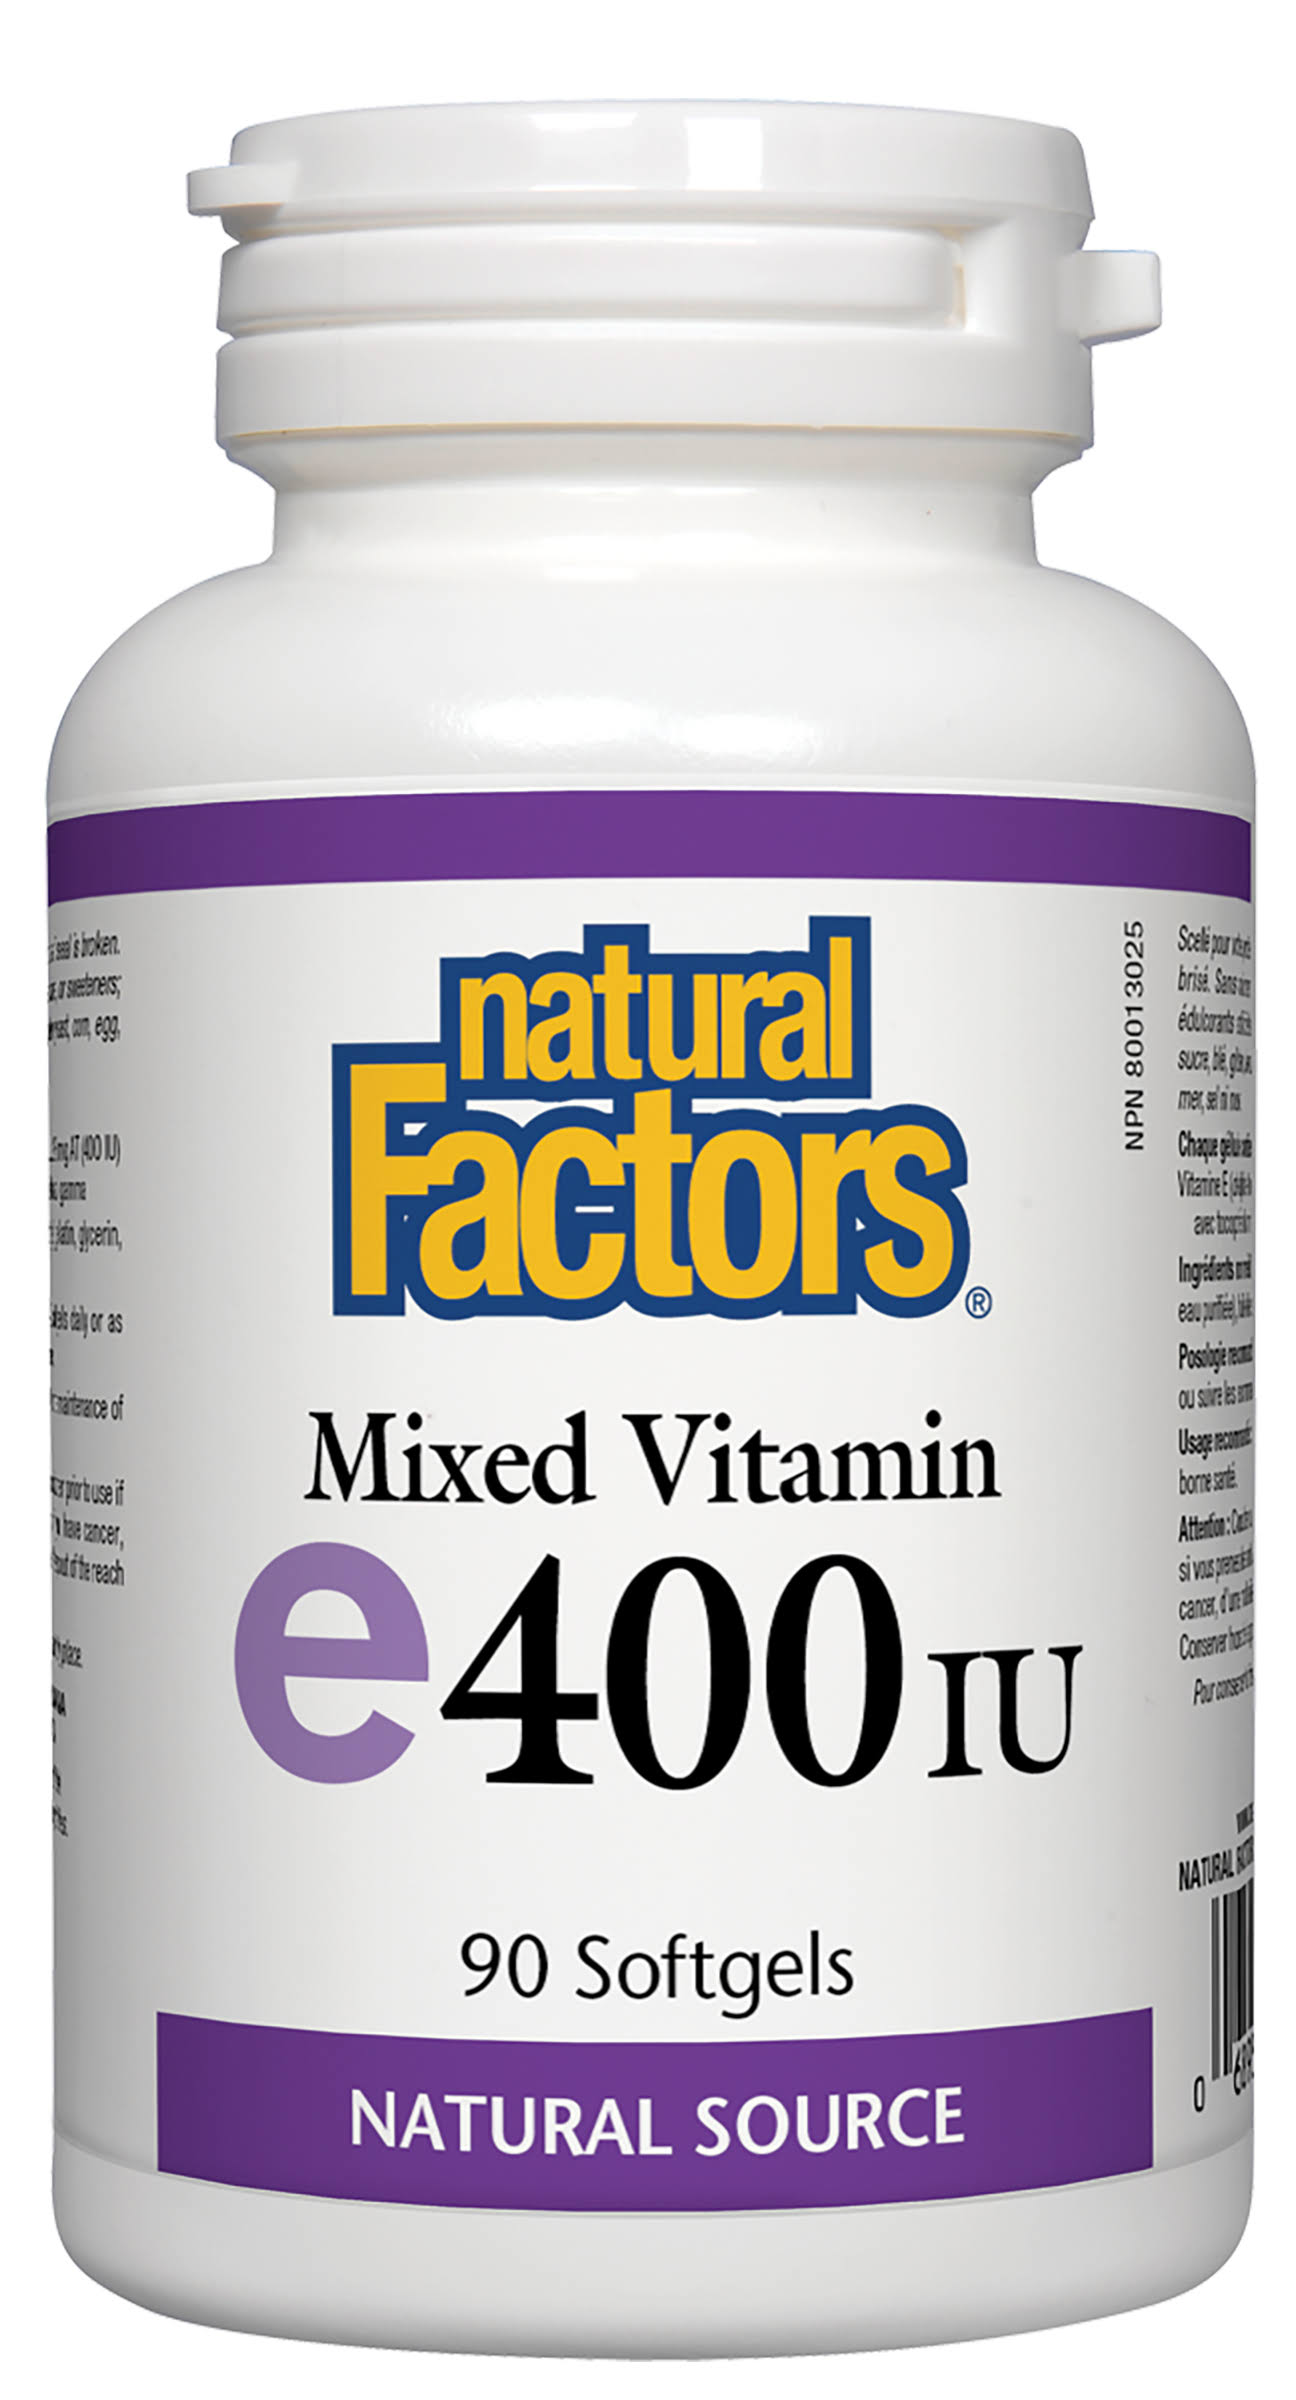 Natural Factors Mixed Vitamin E400 IU - 90 Softgels